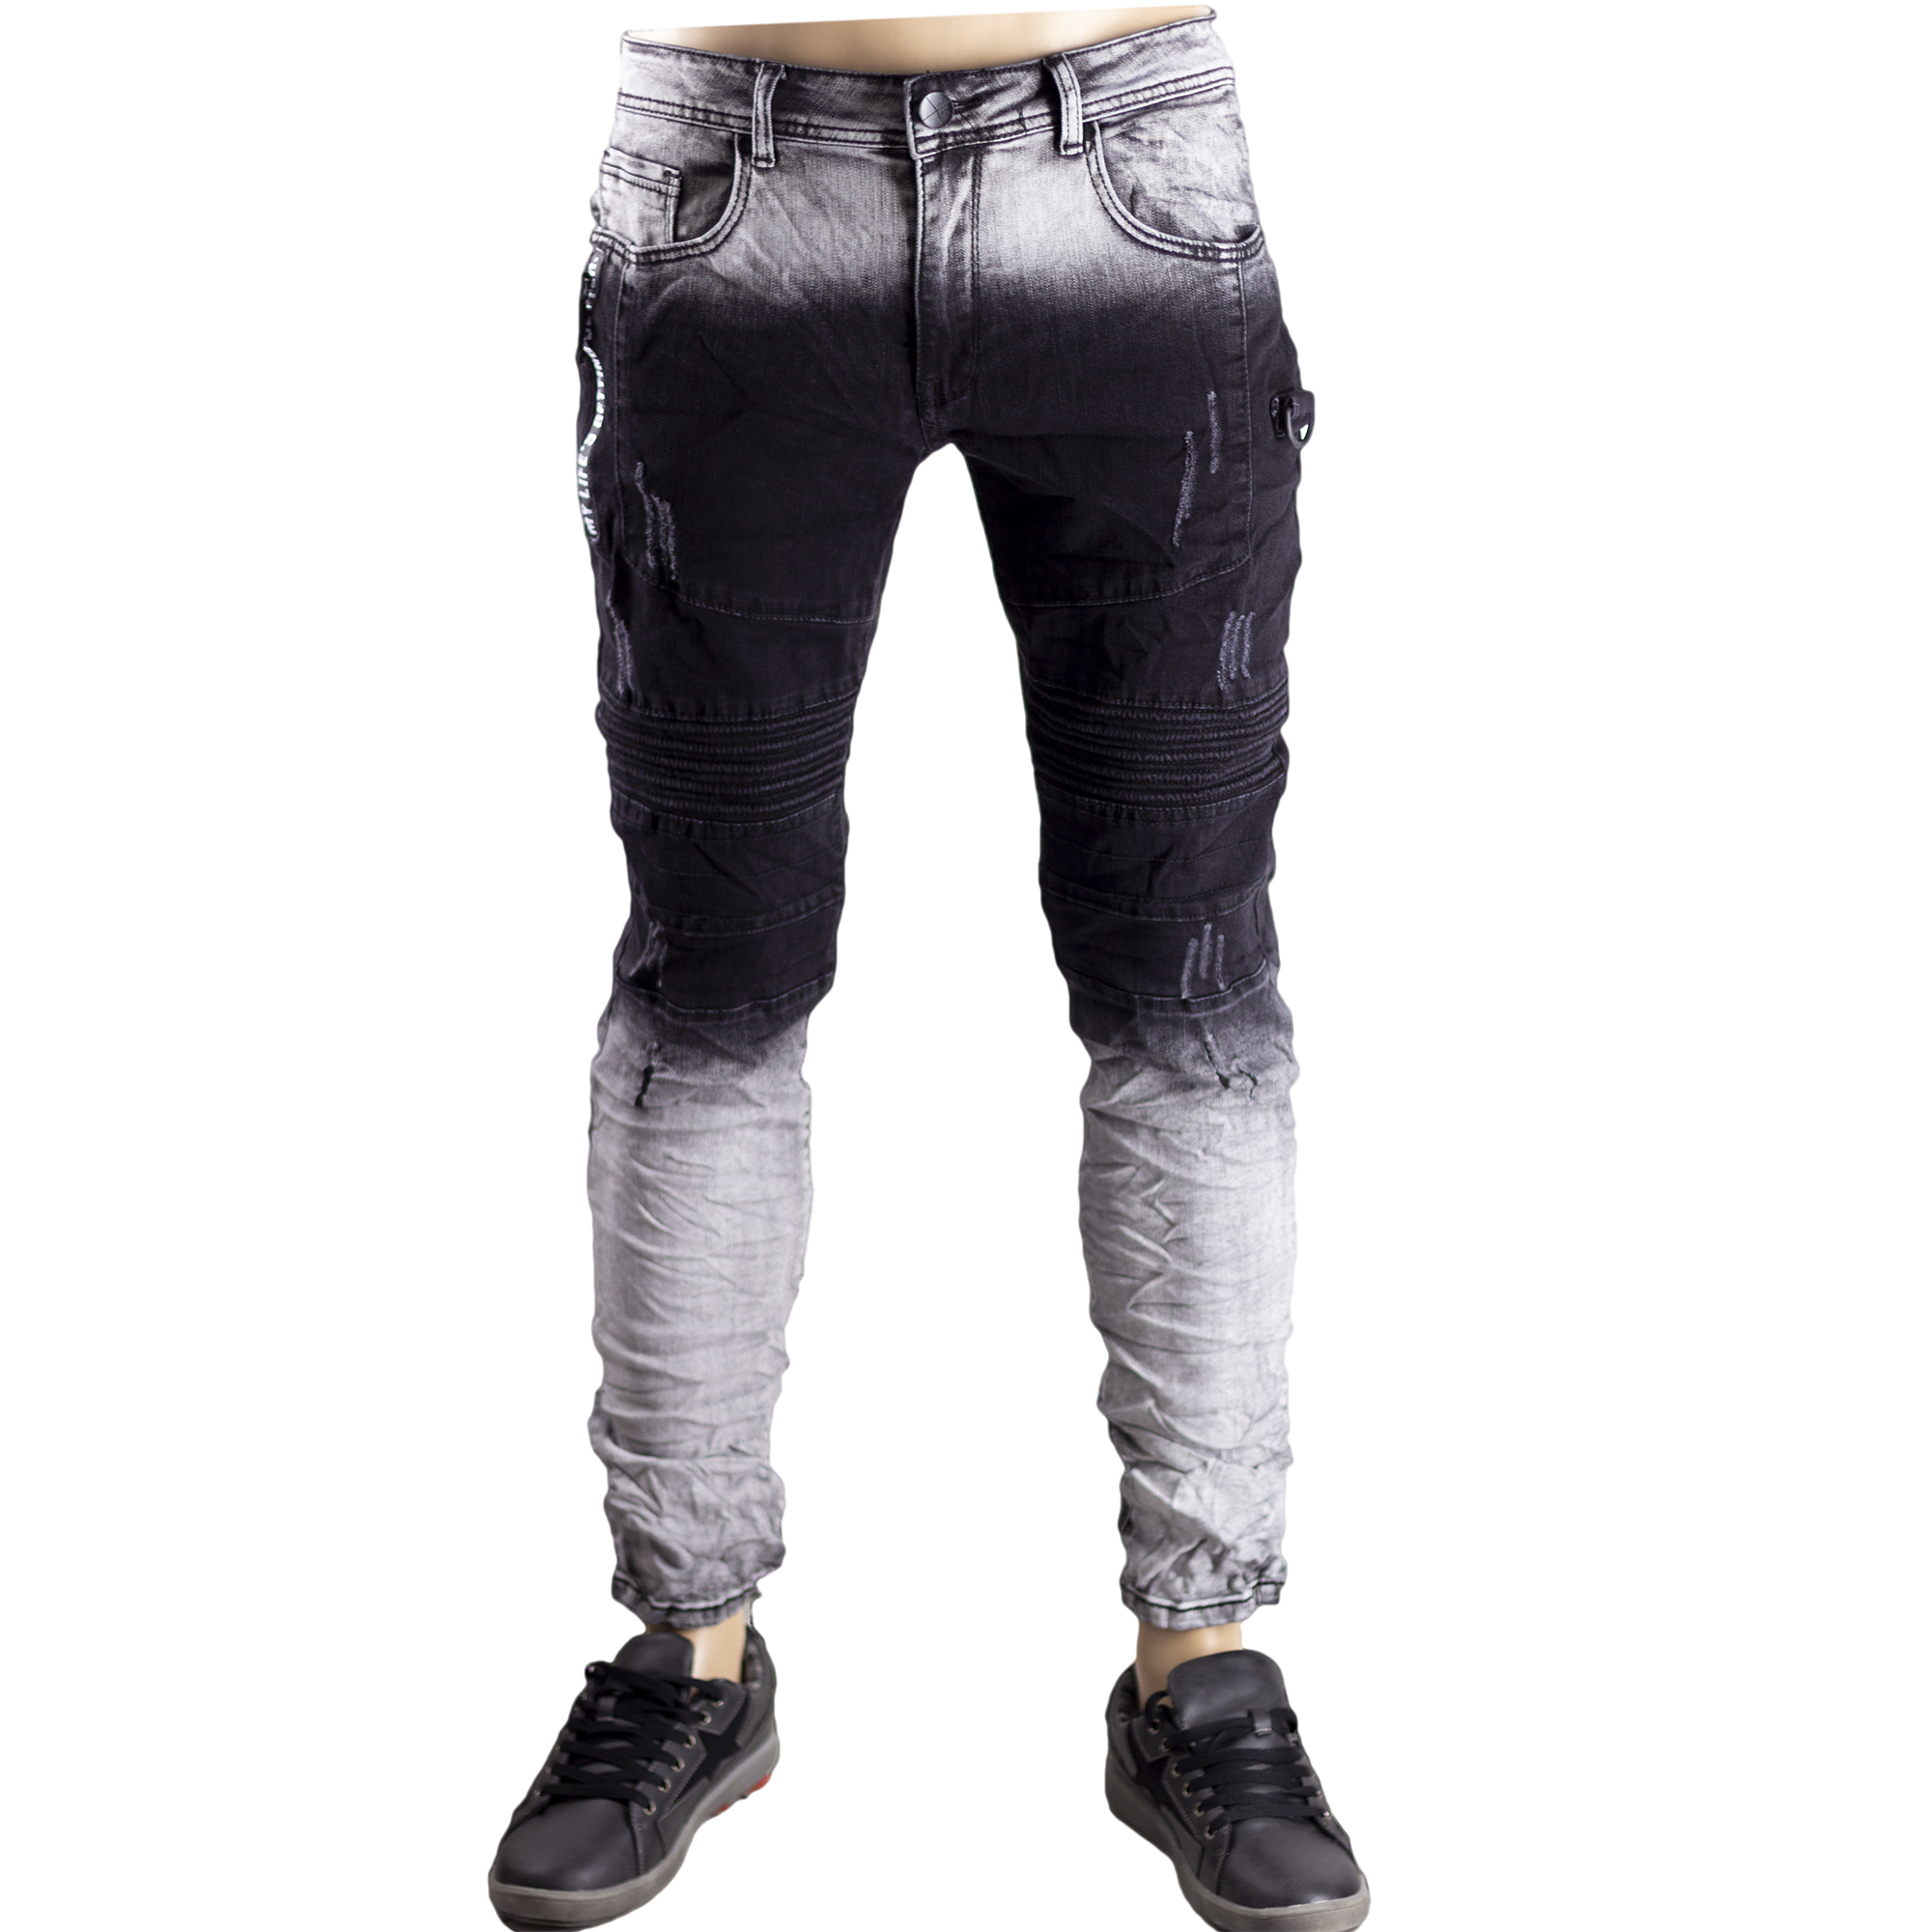 Rcool Jeans Skinny da Uomo Casuale Denim Pantaloni Slim Fit Elasticizzati 4 Colore S-3XL, Jeans Uomo Strappato